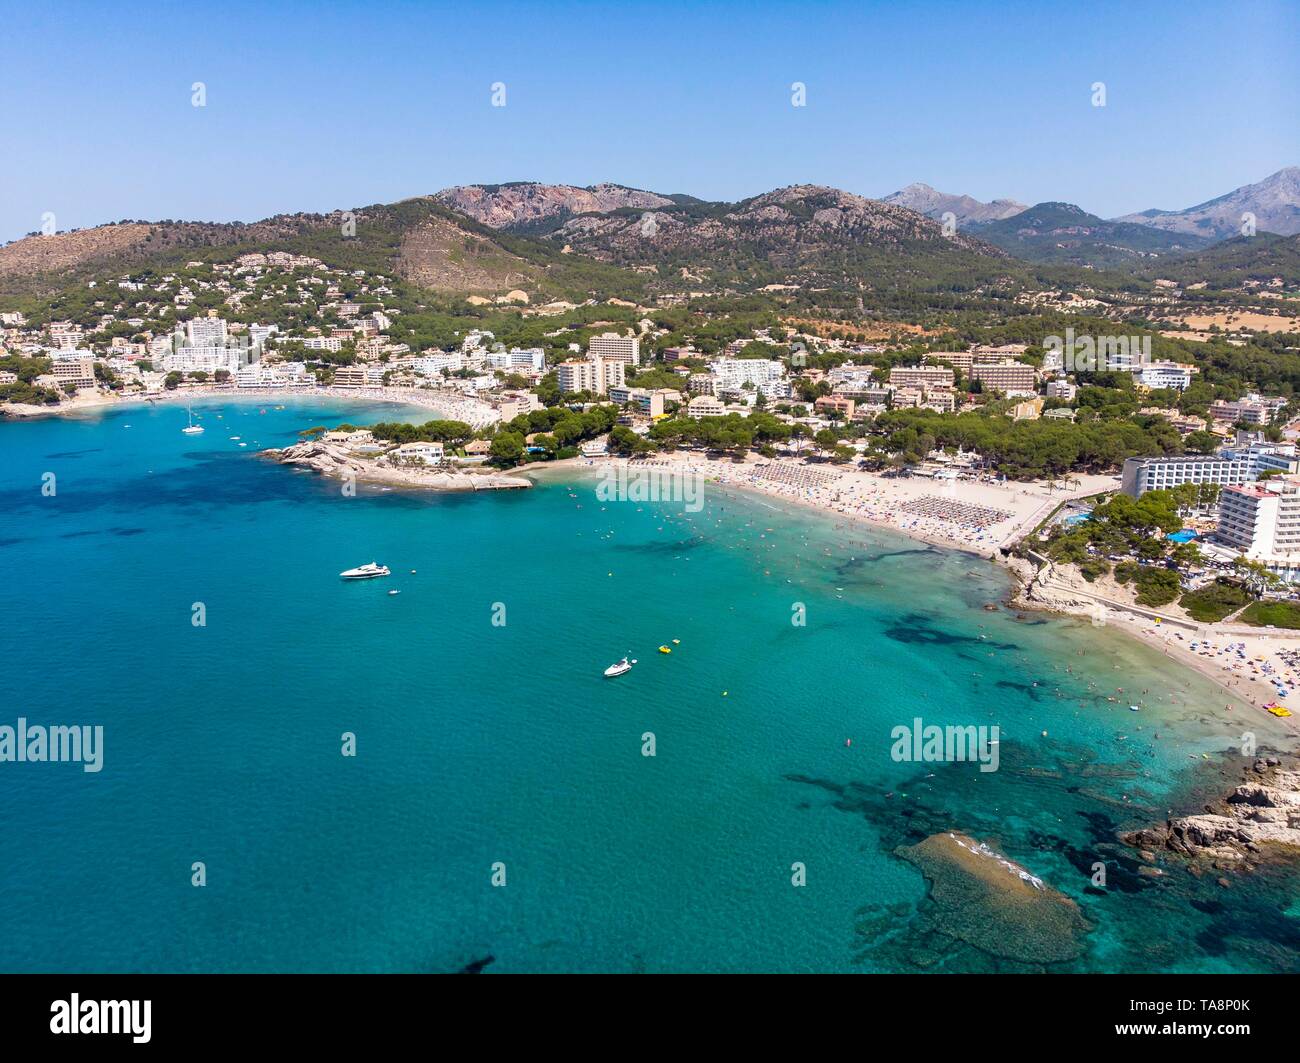 Luftaufnahme, Blick auf die Stadt Benidorm mit Hotels und Strände, Costa de la Calma, Region Caliva, Mallorca, Balearen, Spanien Stockfoto